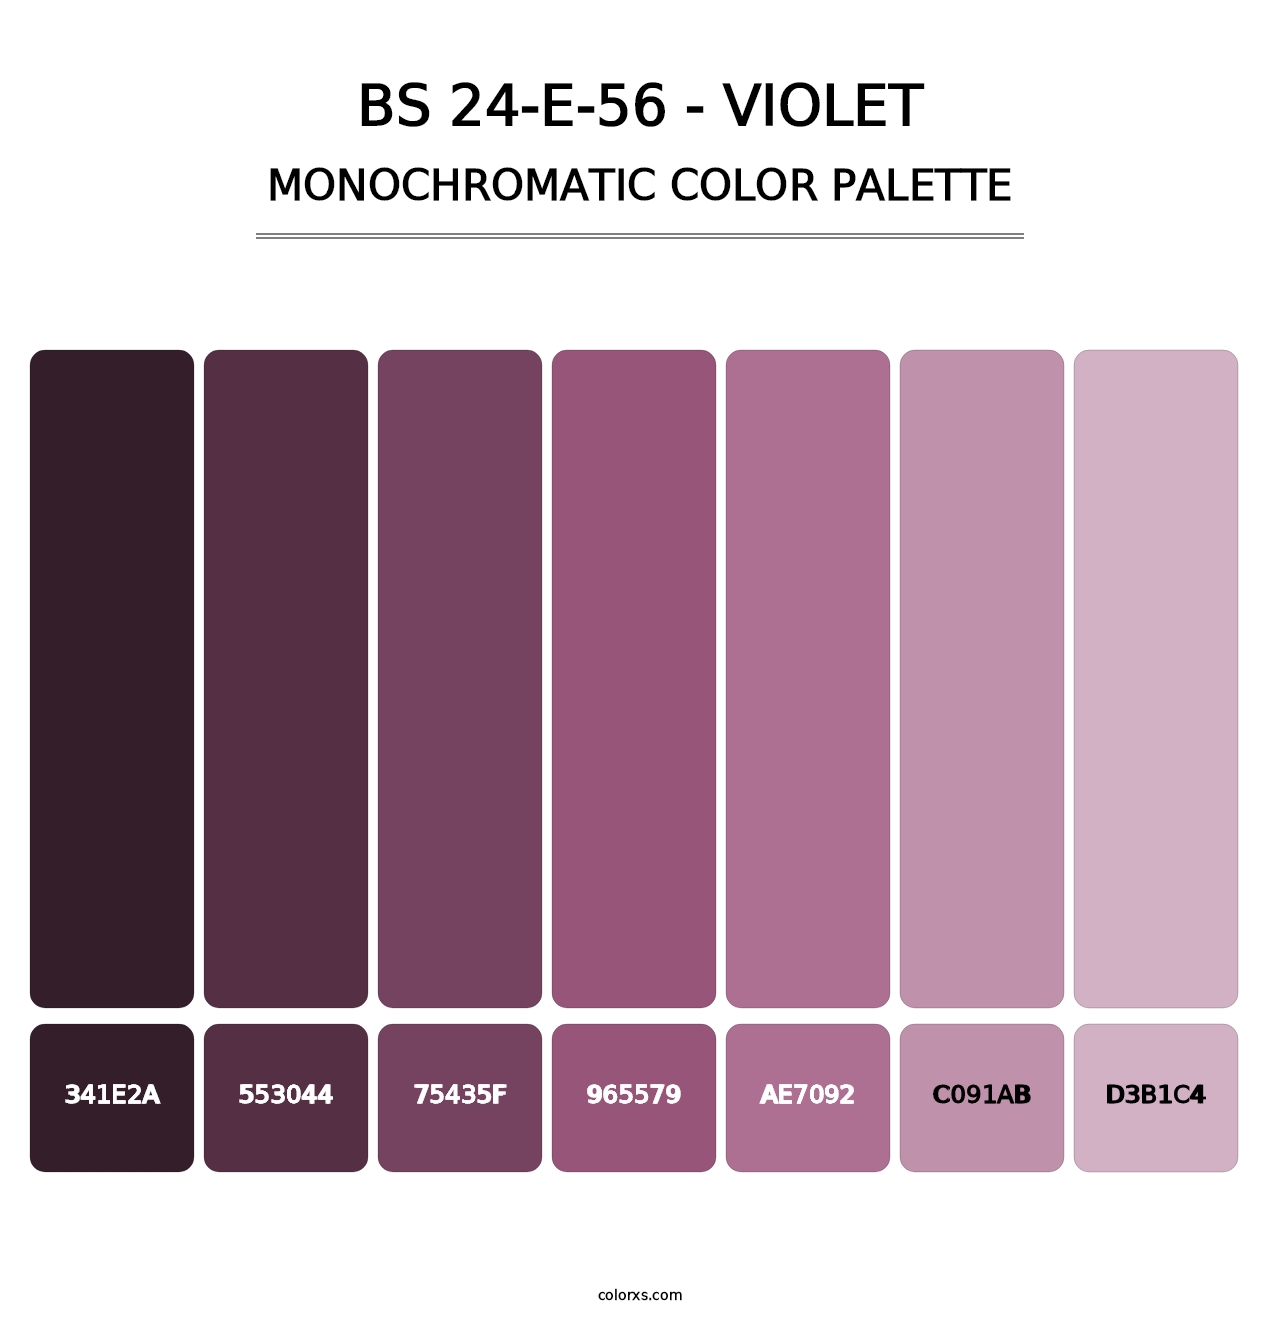 BS 24-E-56 - Violet - Monochromatic Color Palette